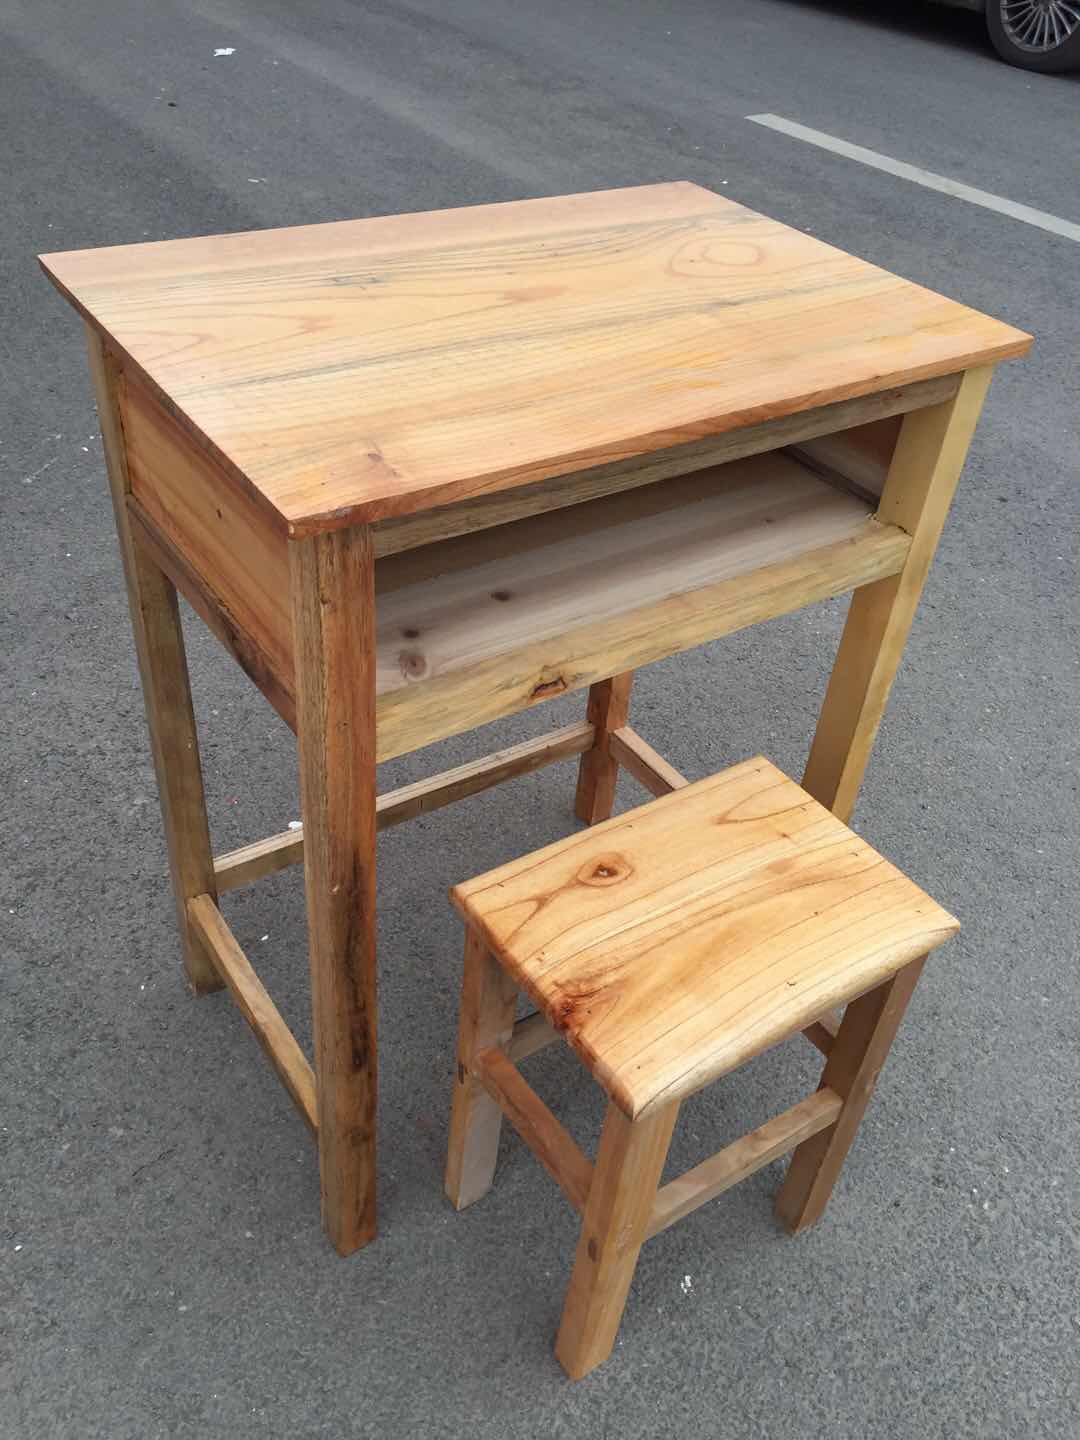 批发供应百色西林全木课桌椅,可折叠课桌椅